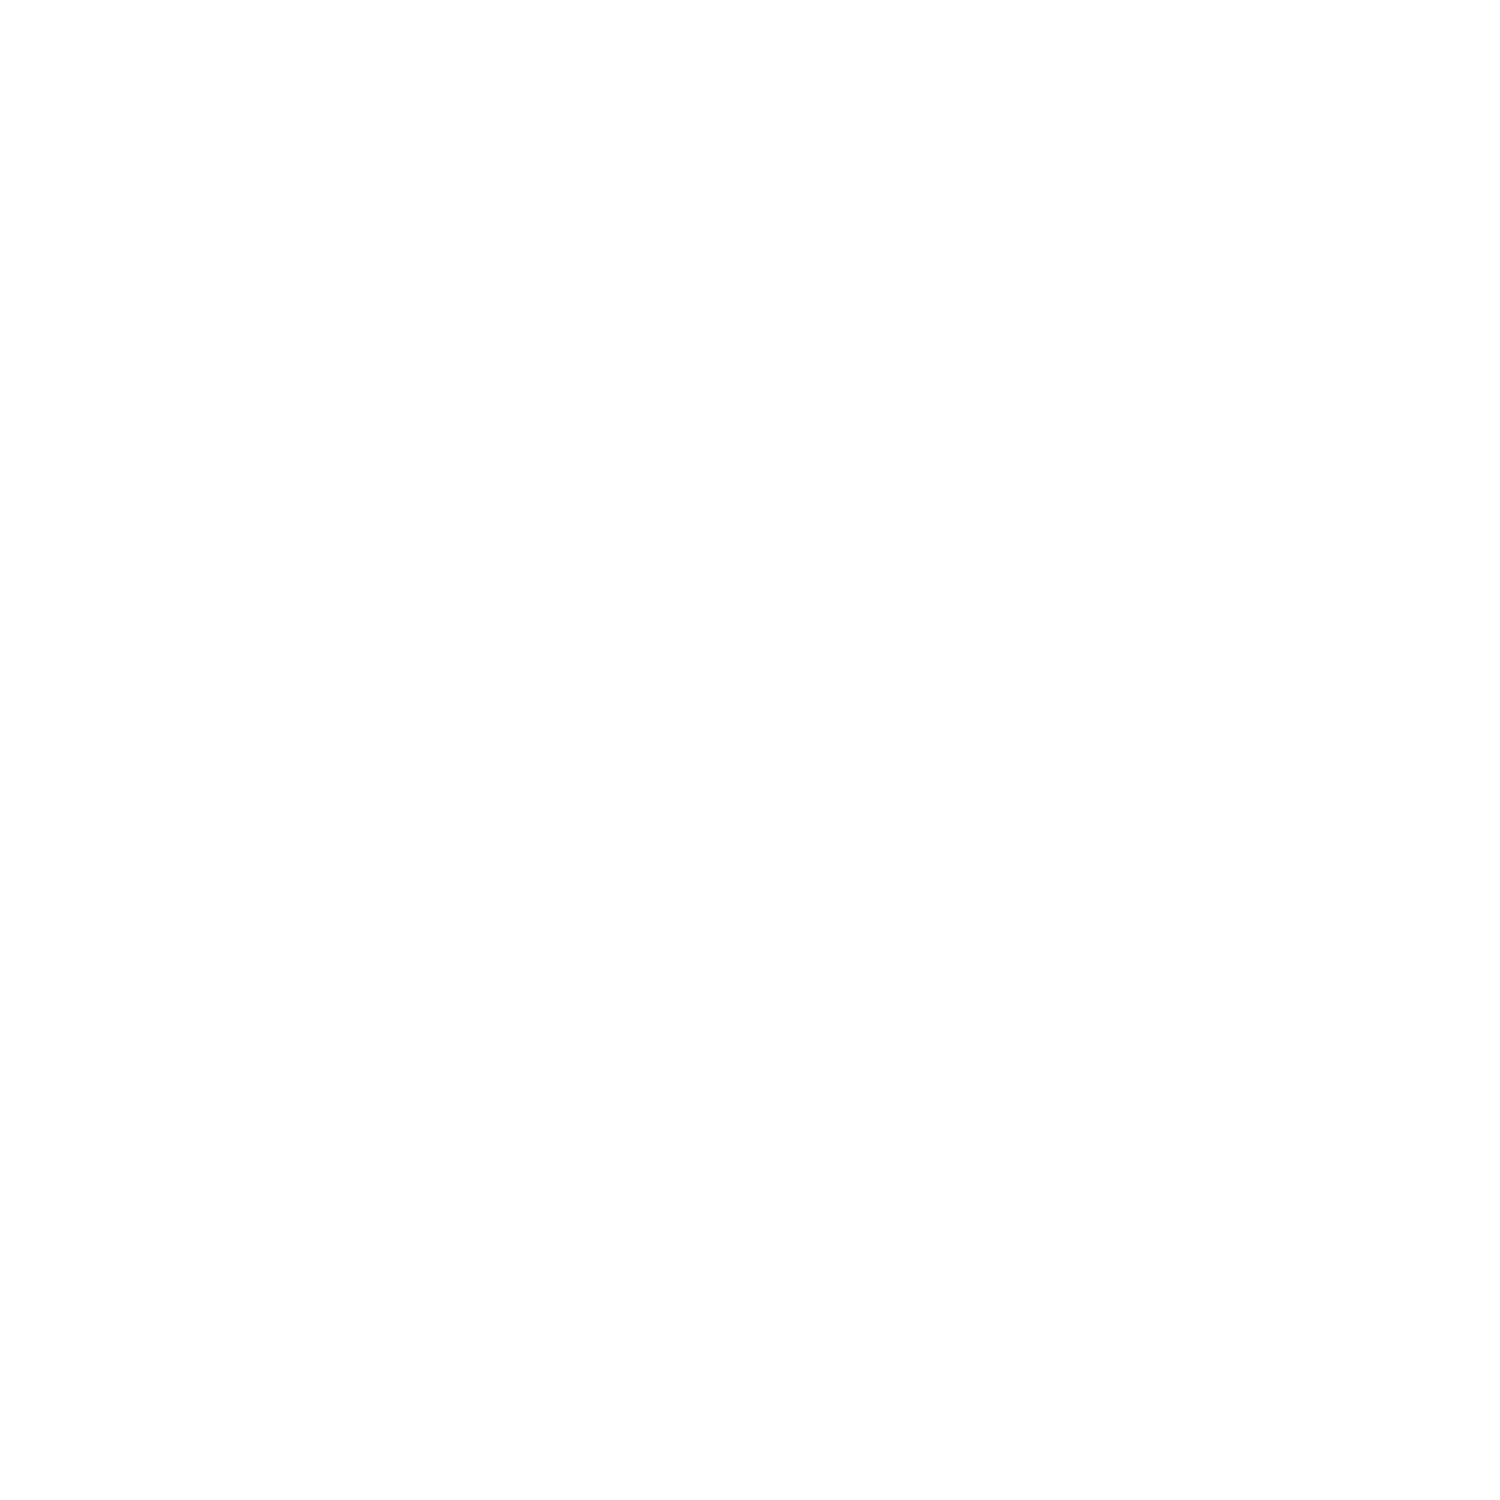 Bushwick Sounds